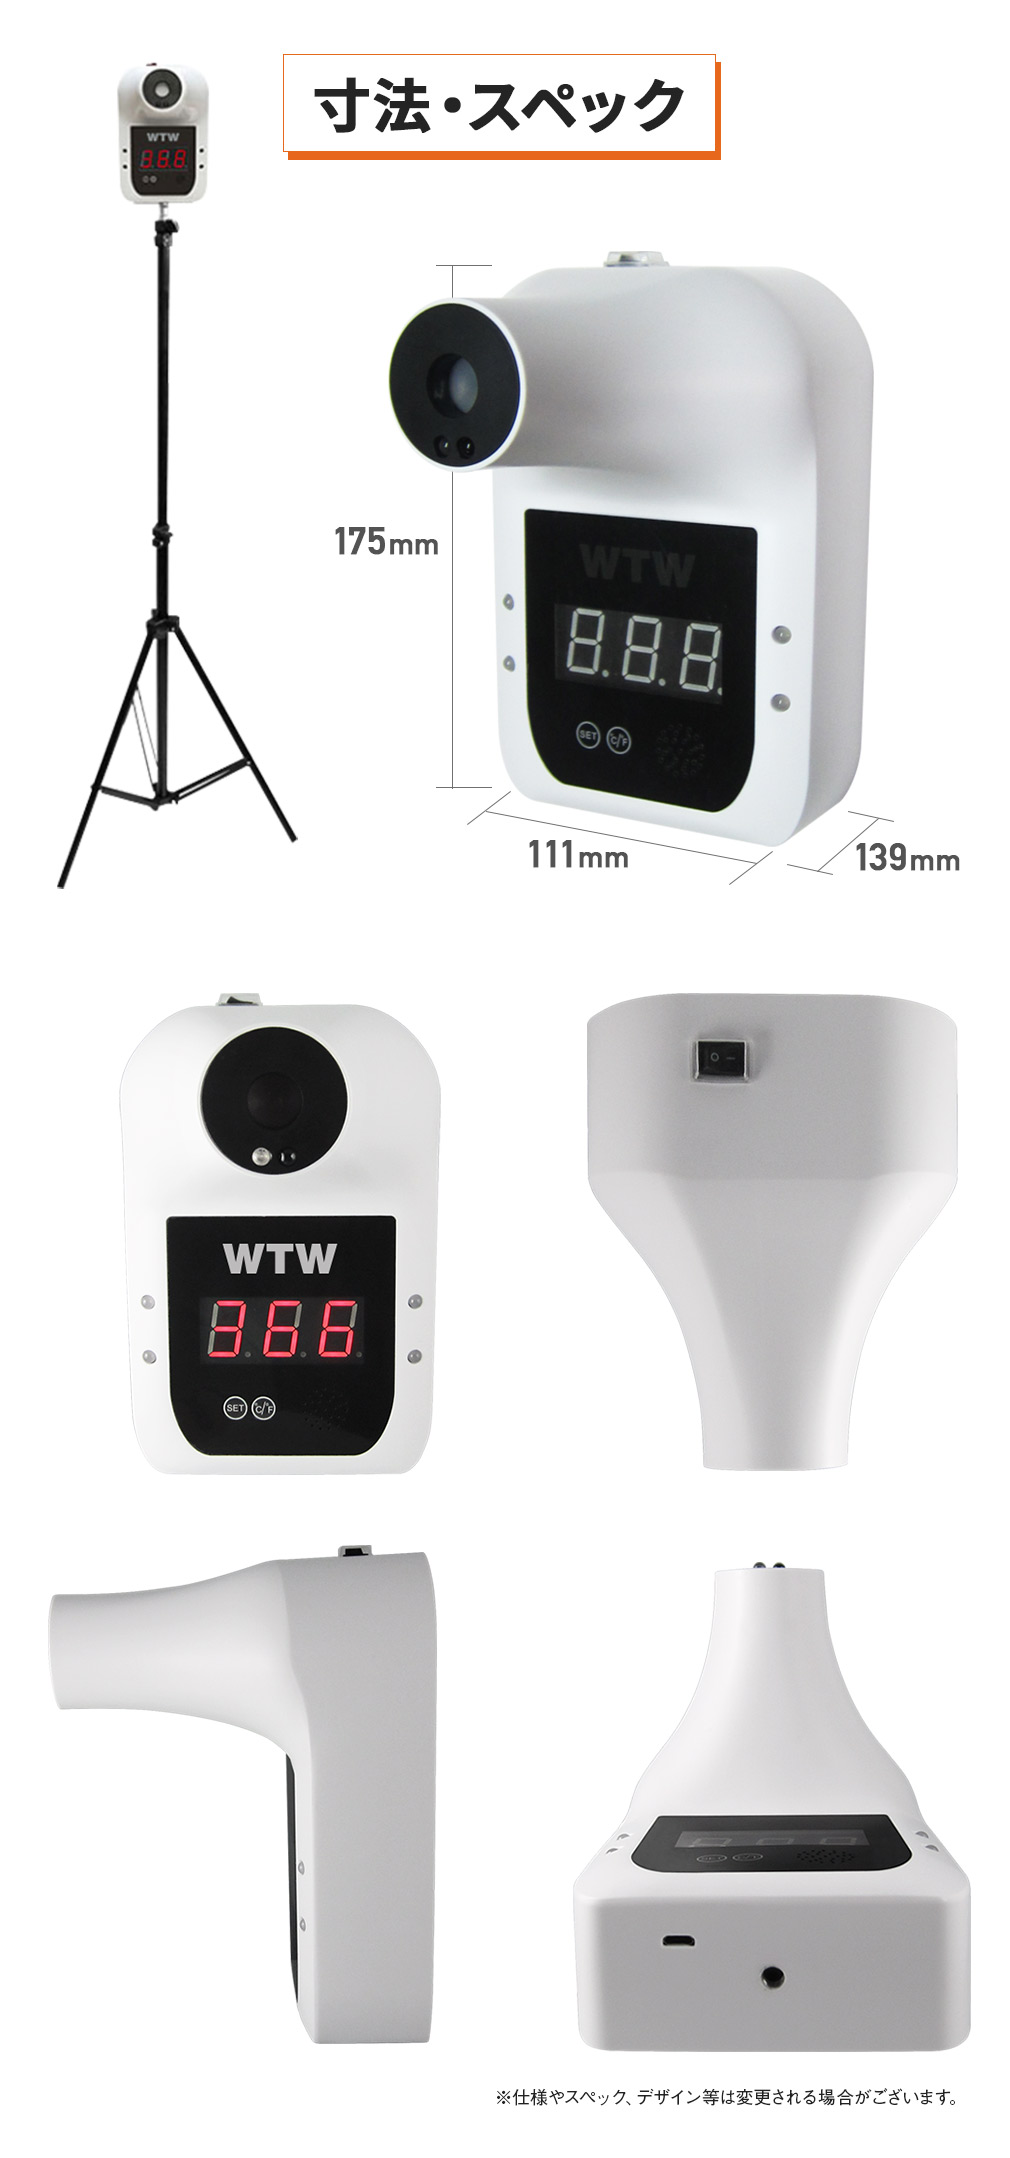 WTW 体温測定カメラ